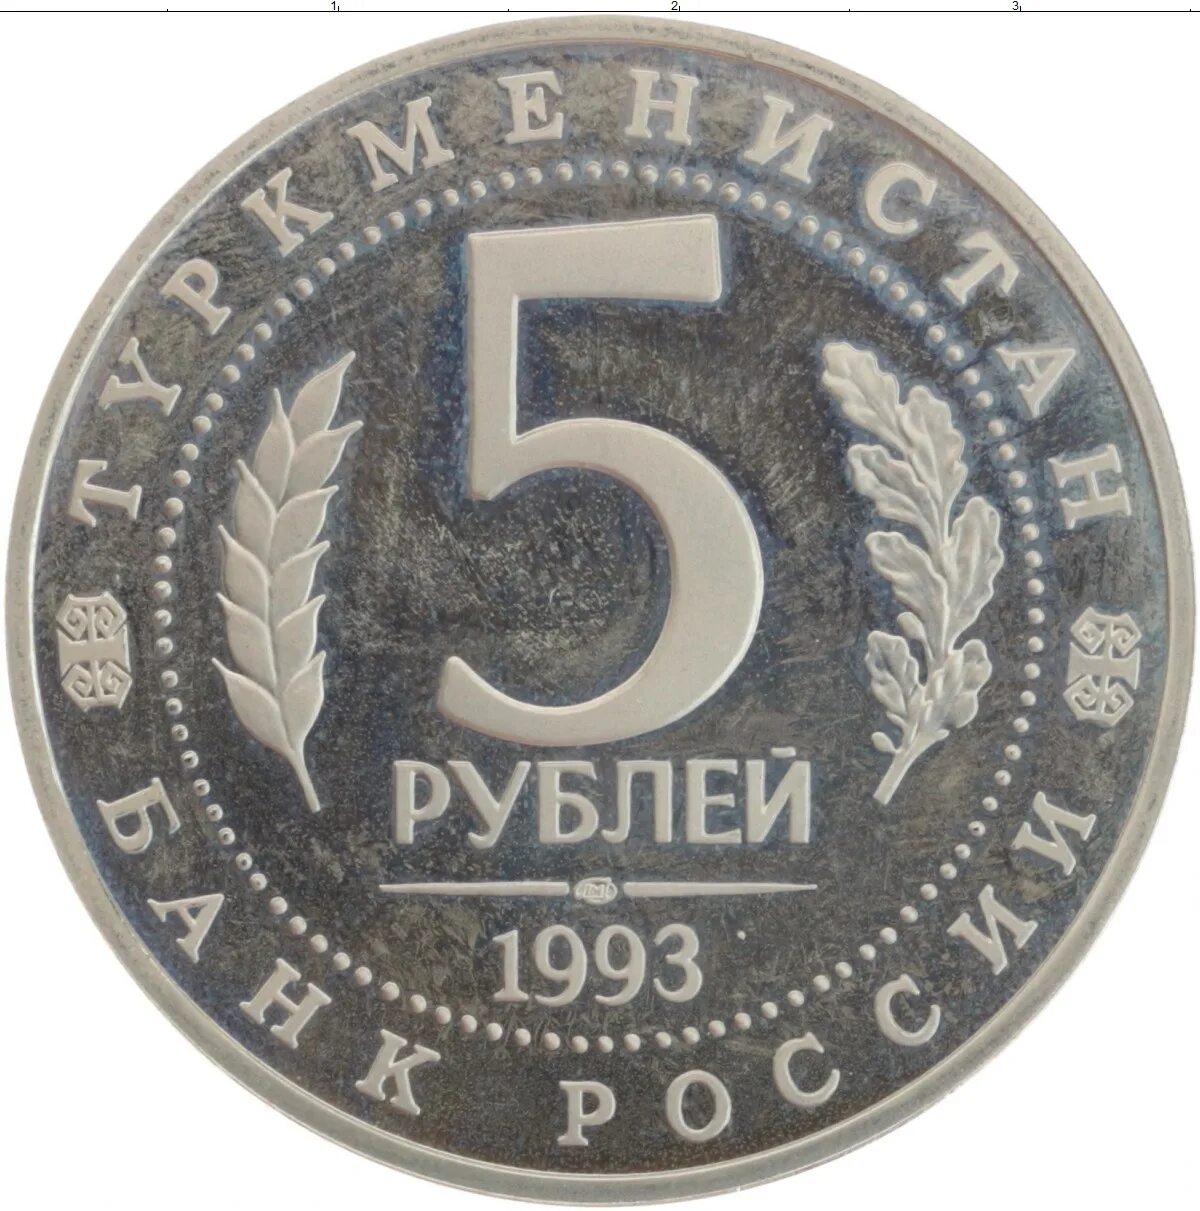 5 рублей медные